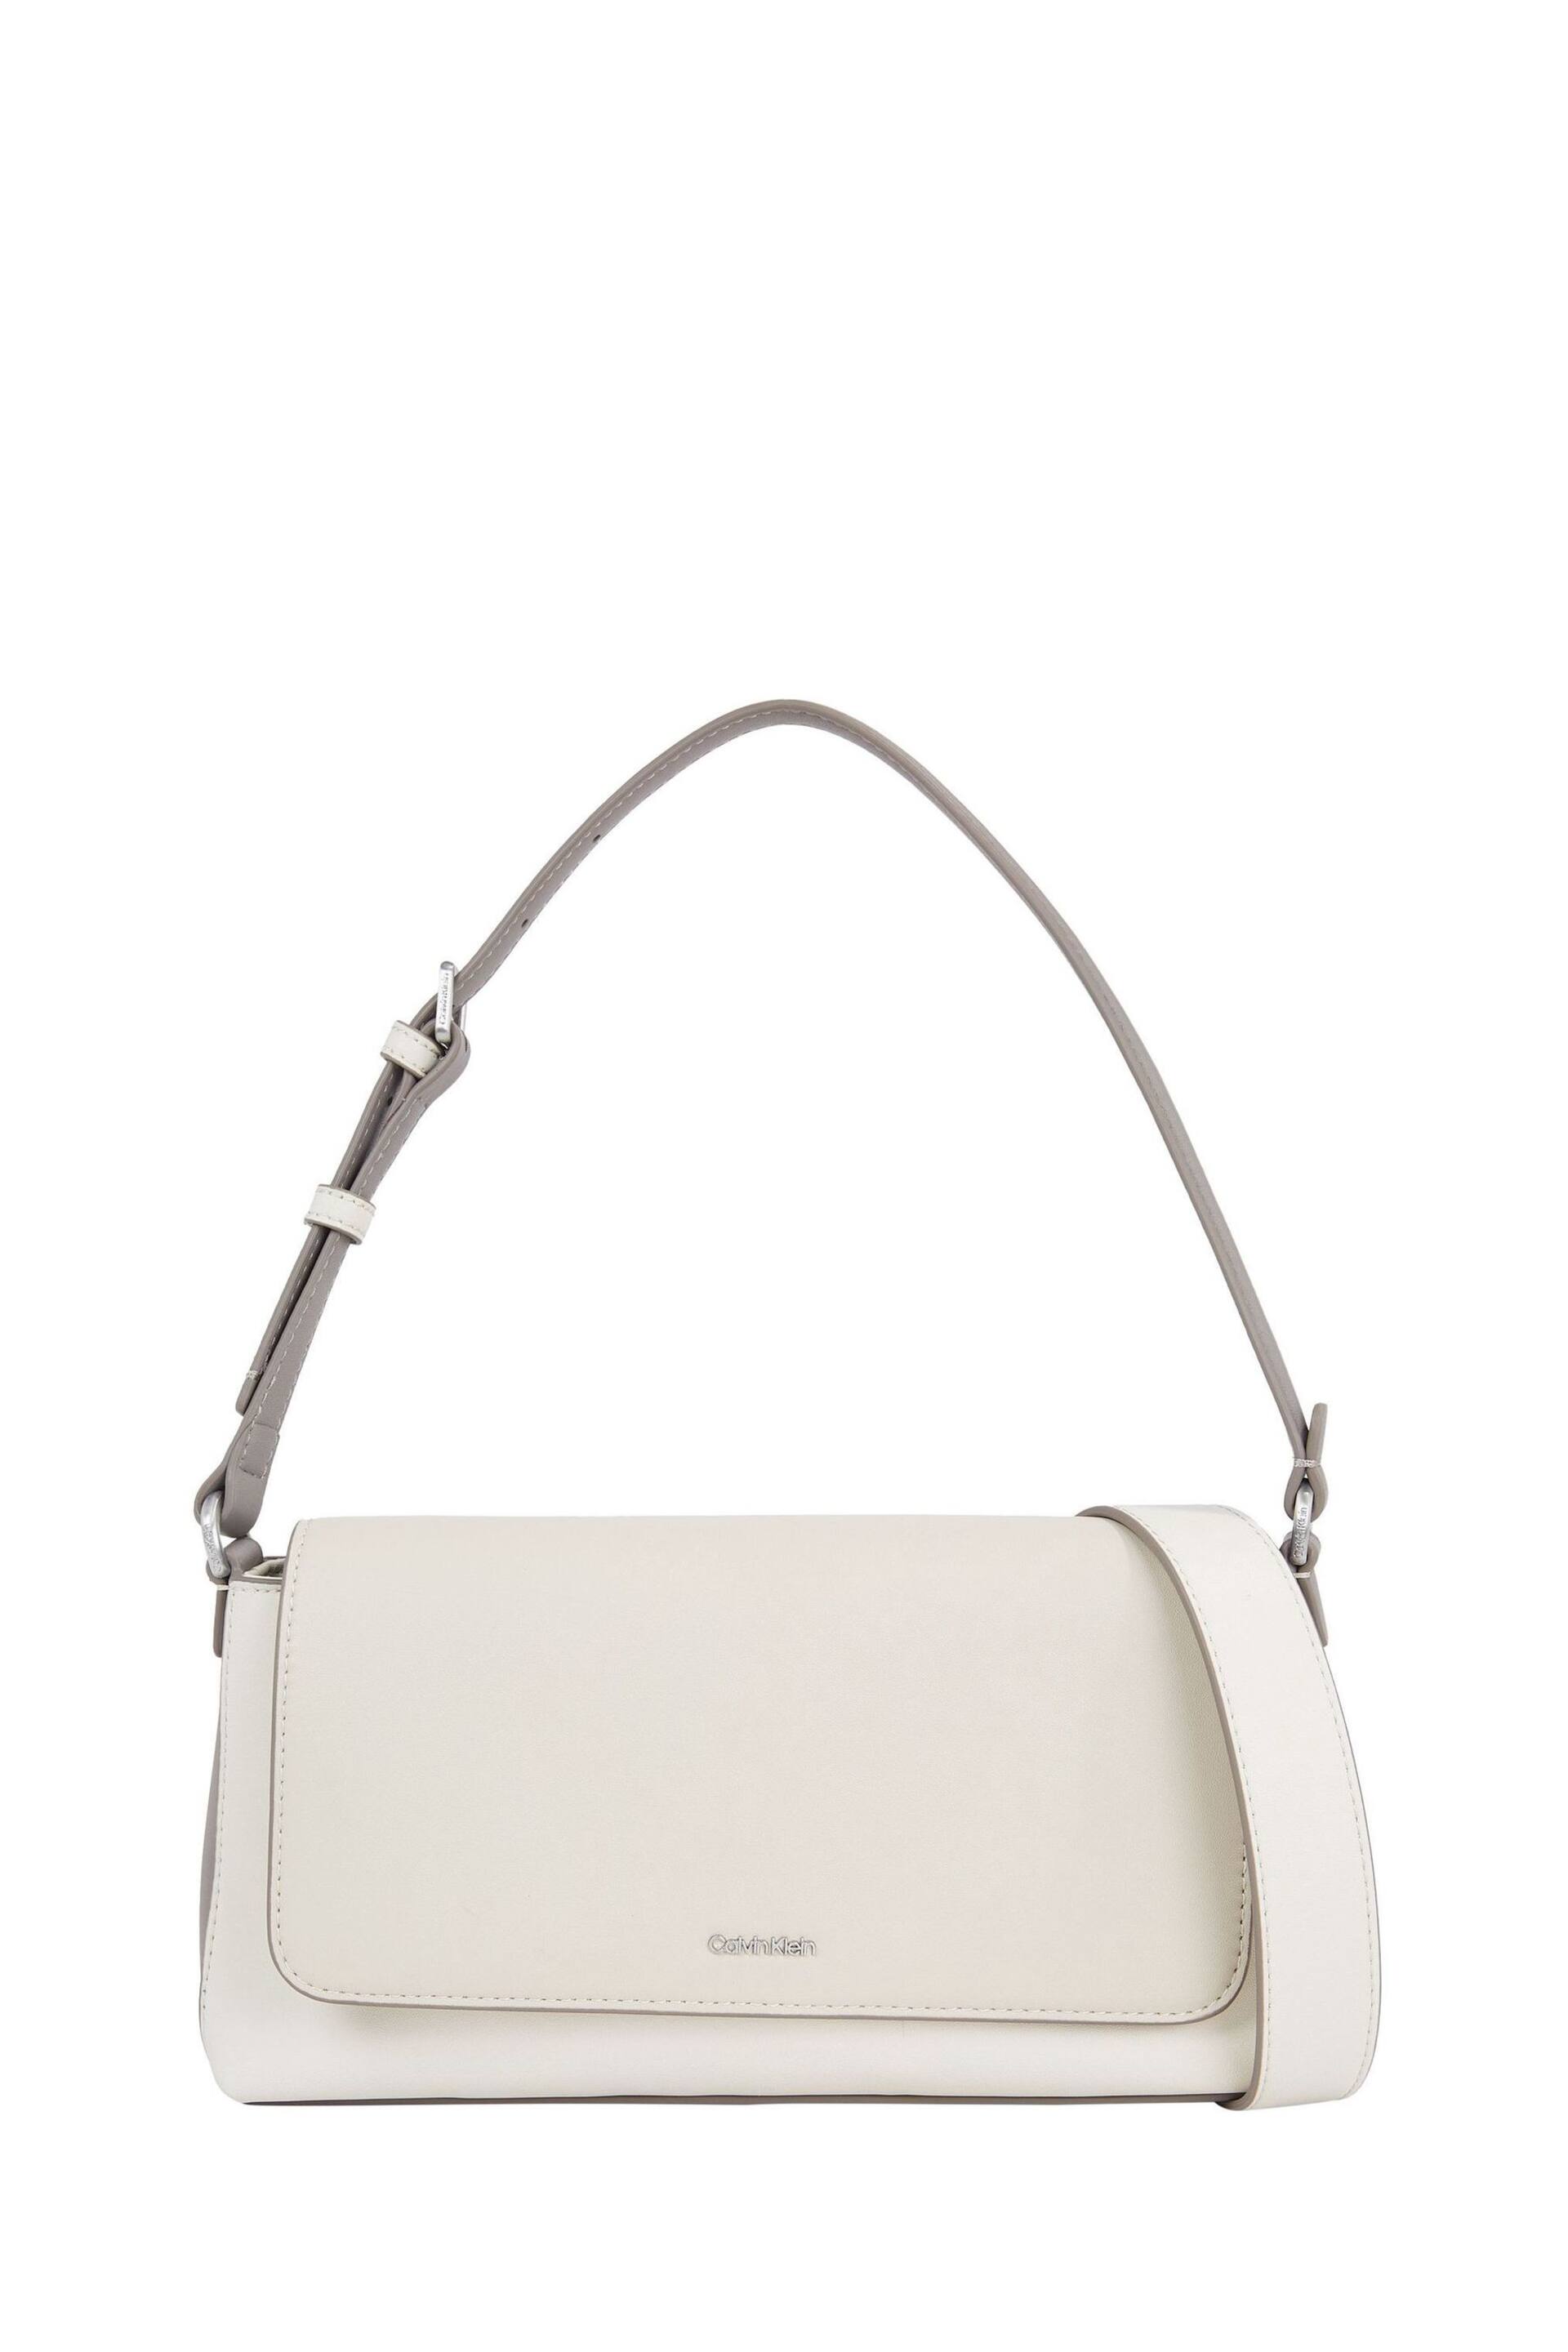 Calvin Klein White Must Shoulder Bag - Image 1 of 4